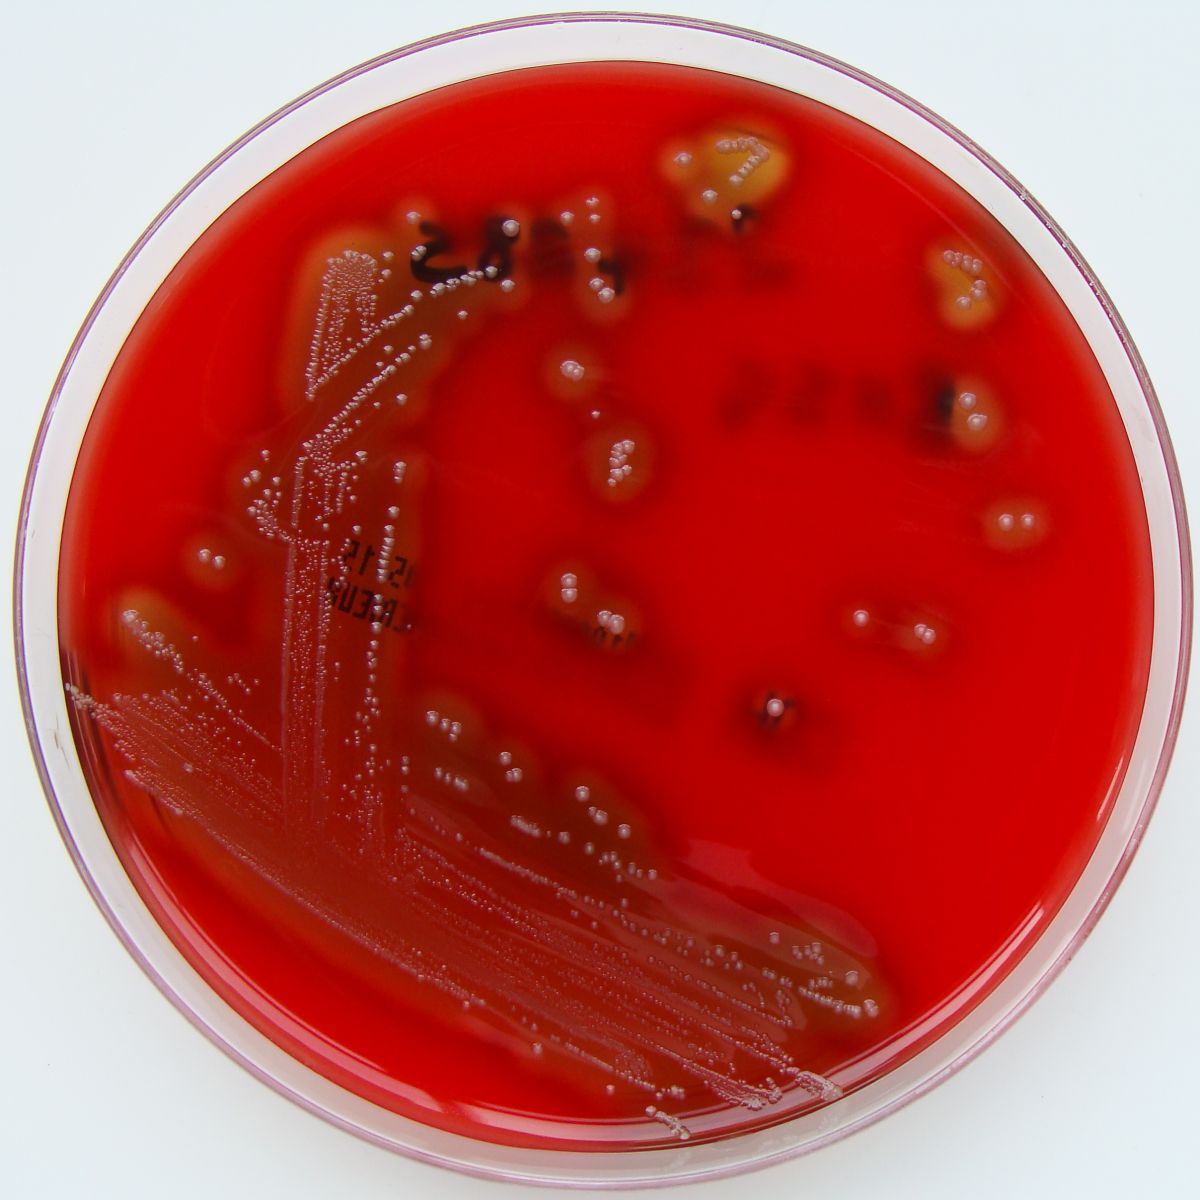 Cas9 ist ein bakterielles Protein, das zum Beispiel aus dem hier abgebildeten Bakterium Streptococcus pyogenes isoliert wird. (Quelle: © Nathan Reading / wikimedia.org; CC BY 2.0)